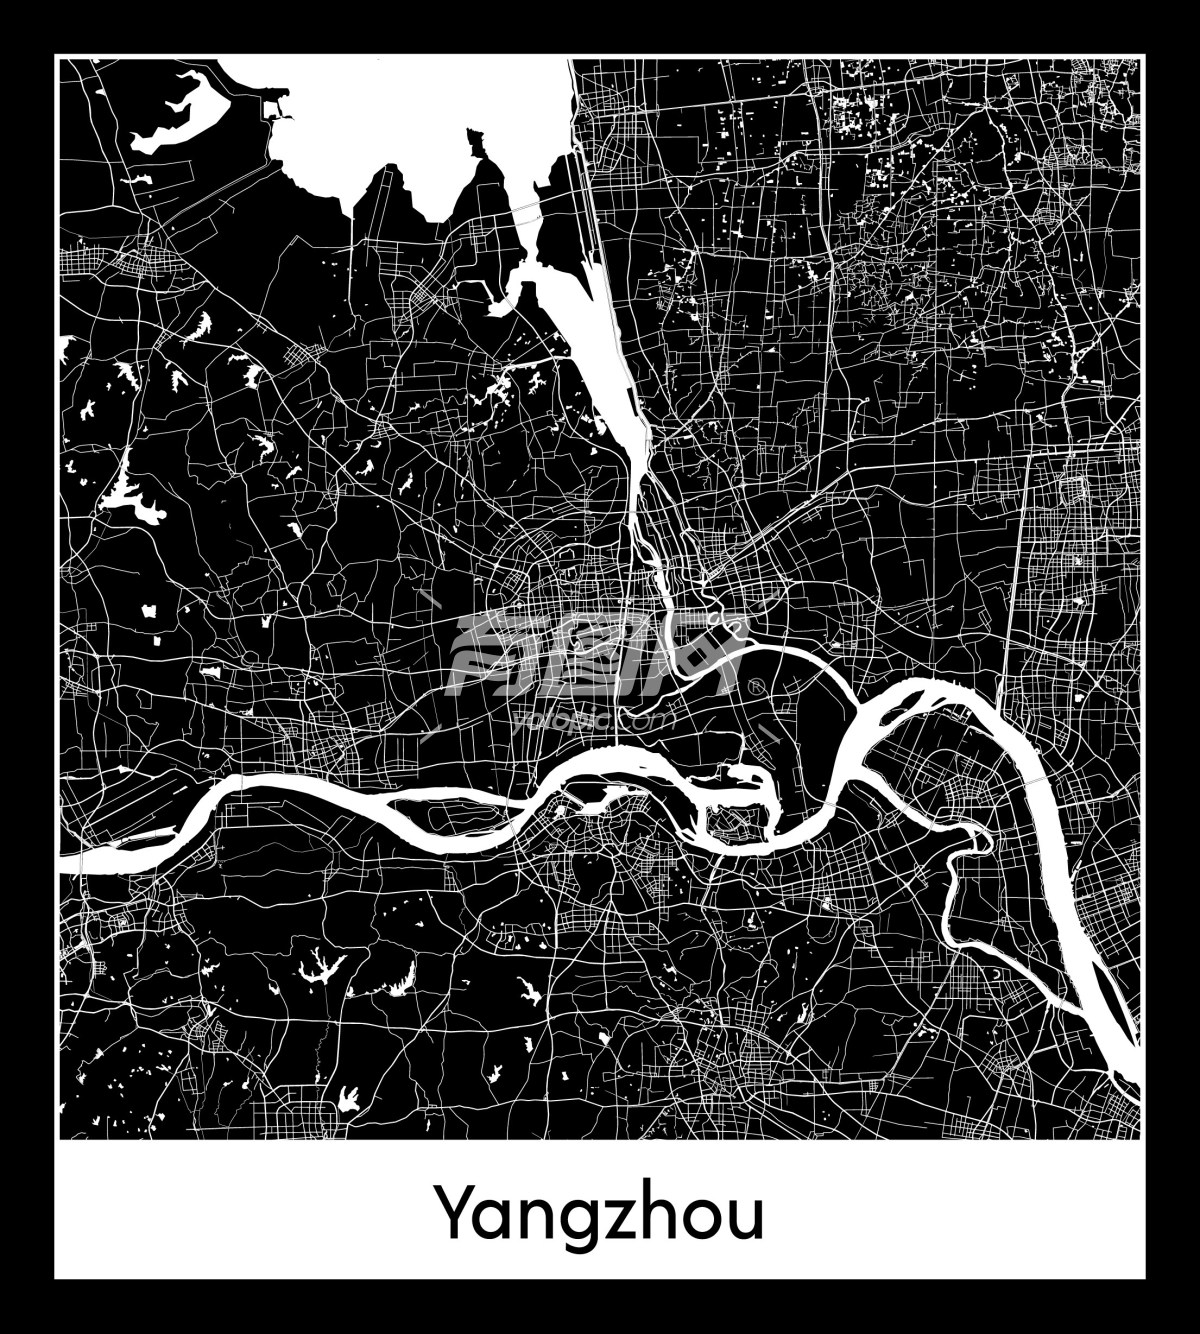 中国江苏省扬州市地图